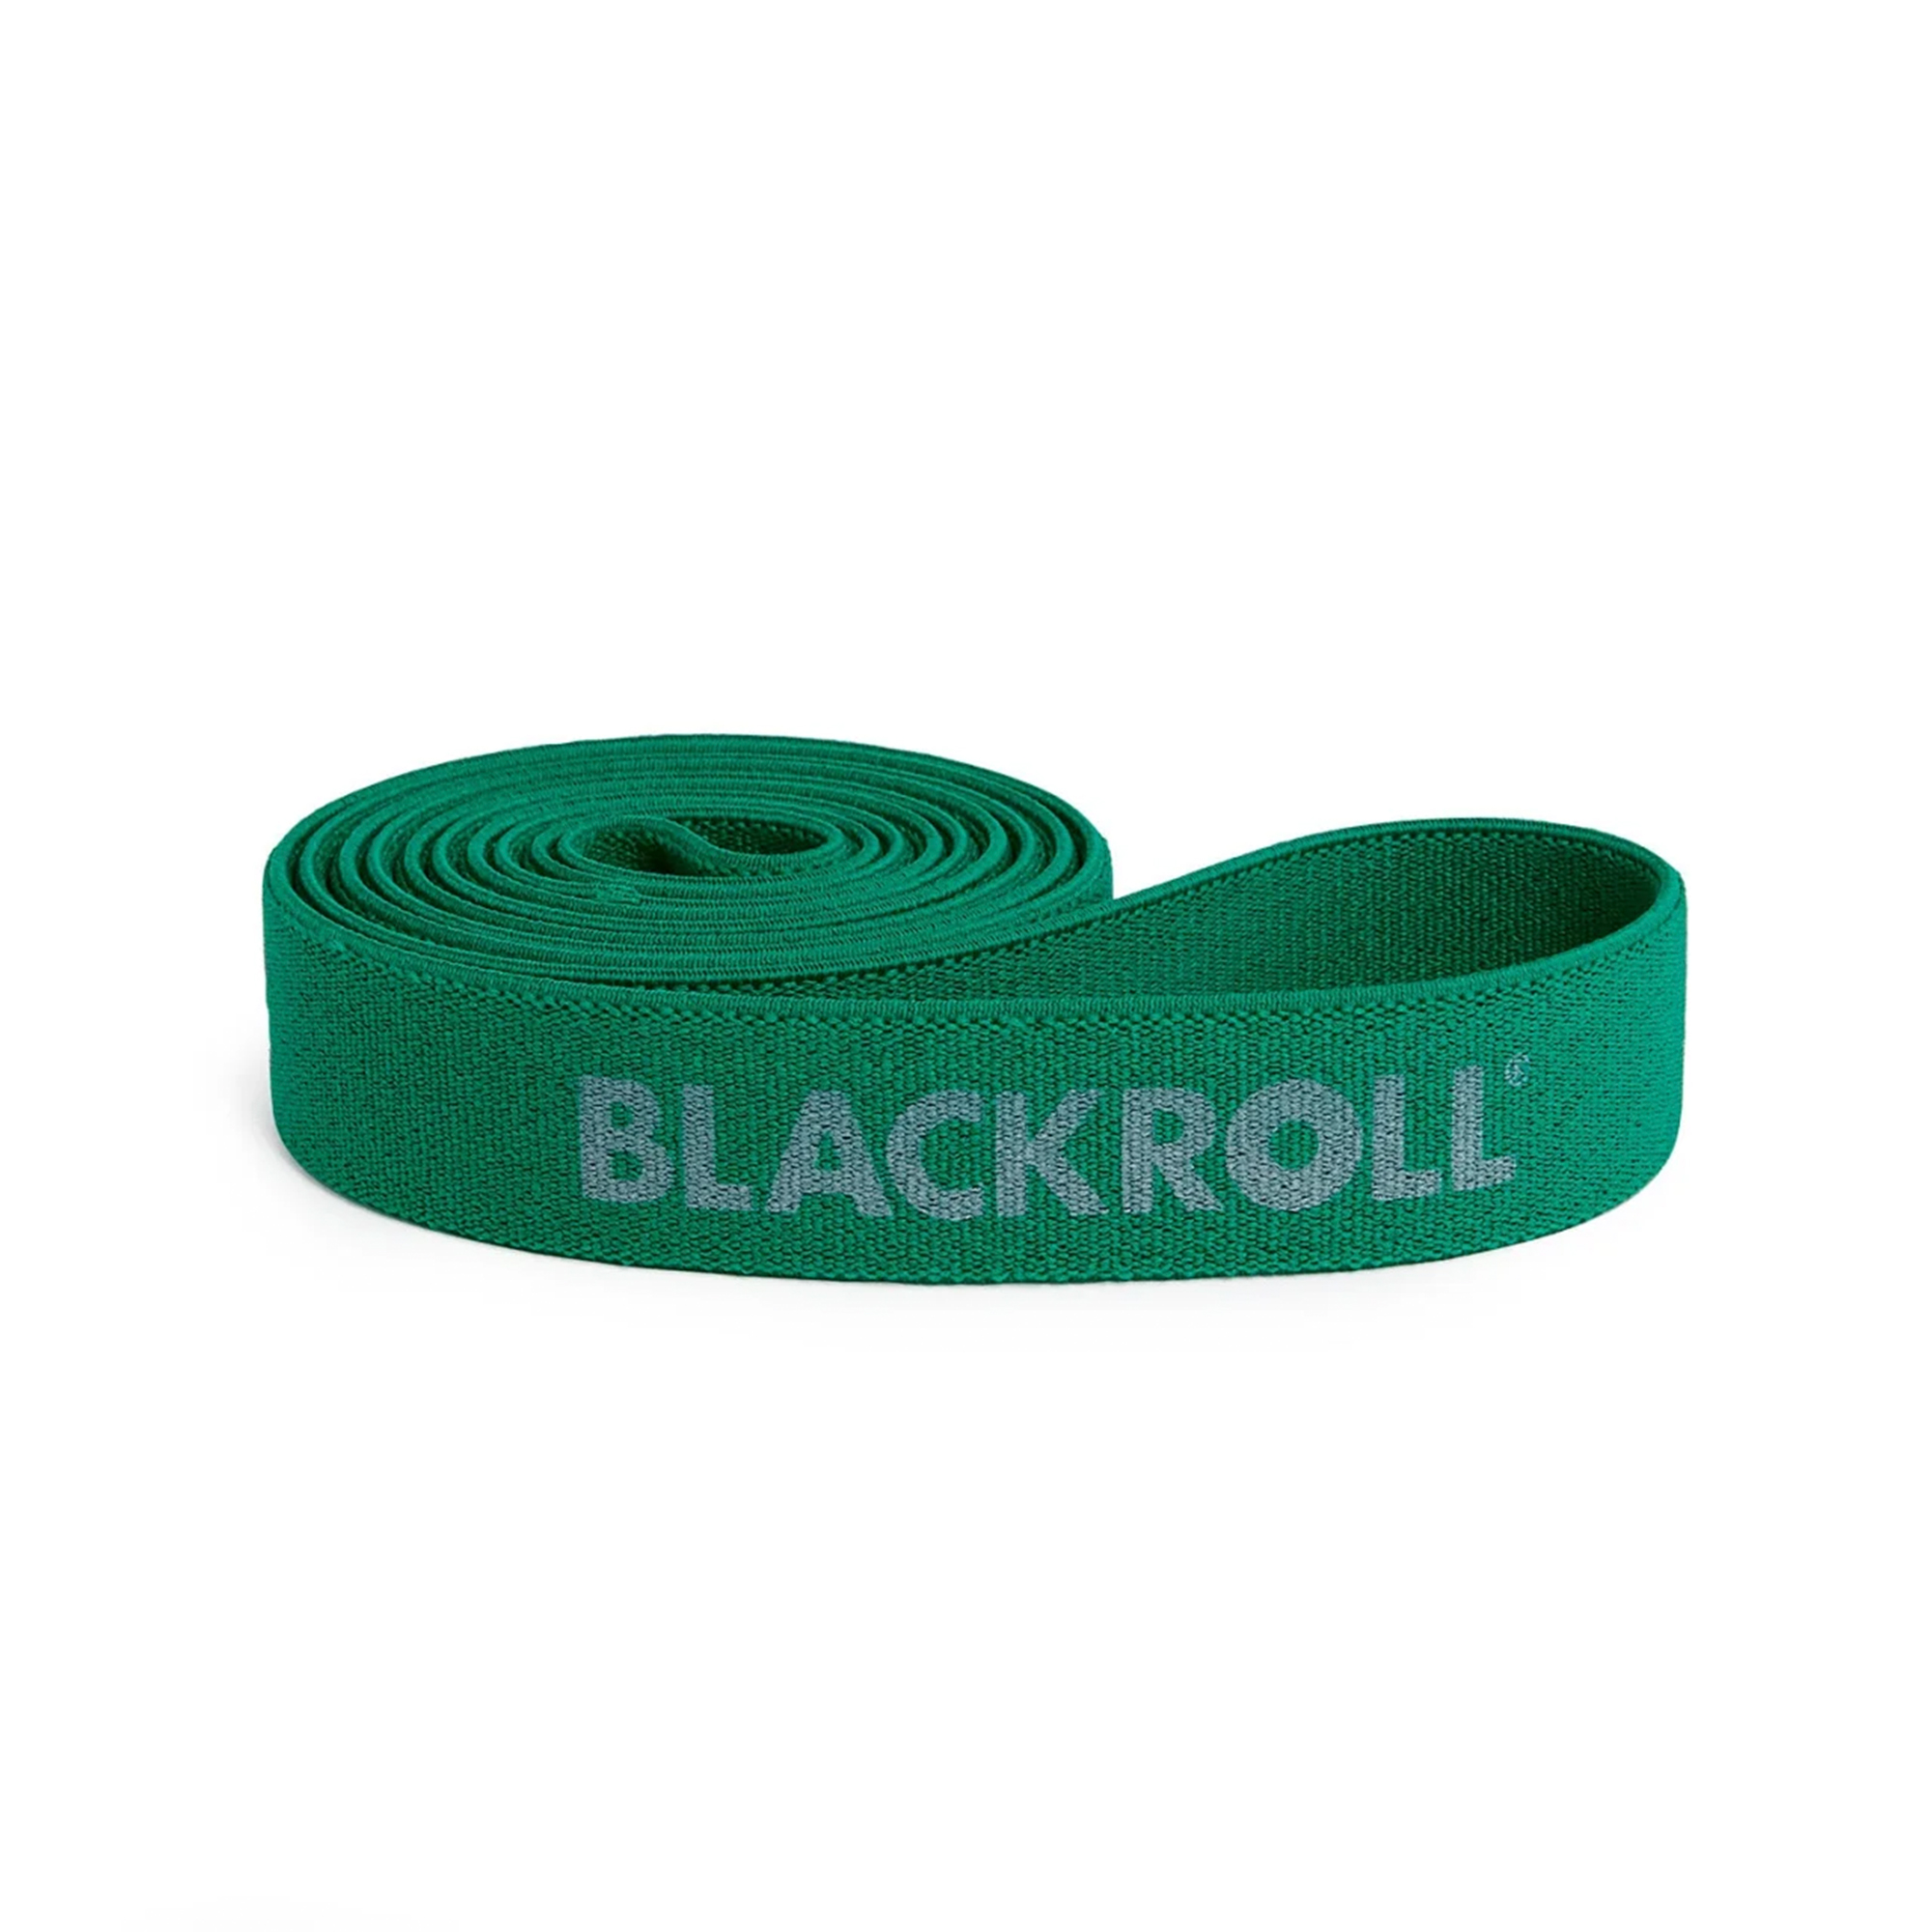 Blackroll Super Band Træningselastik - Medium (104 x 3 cm) thumbnail